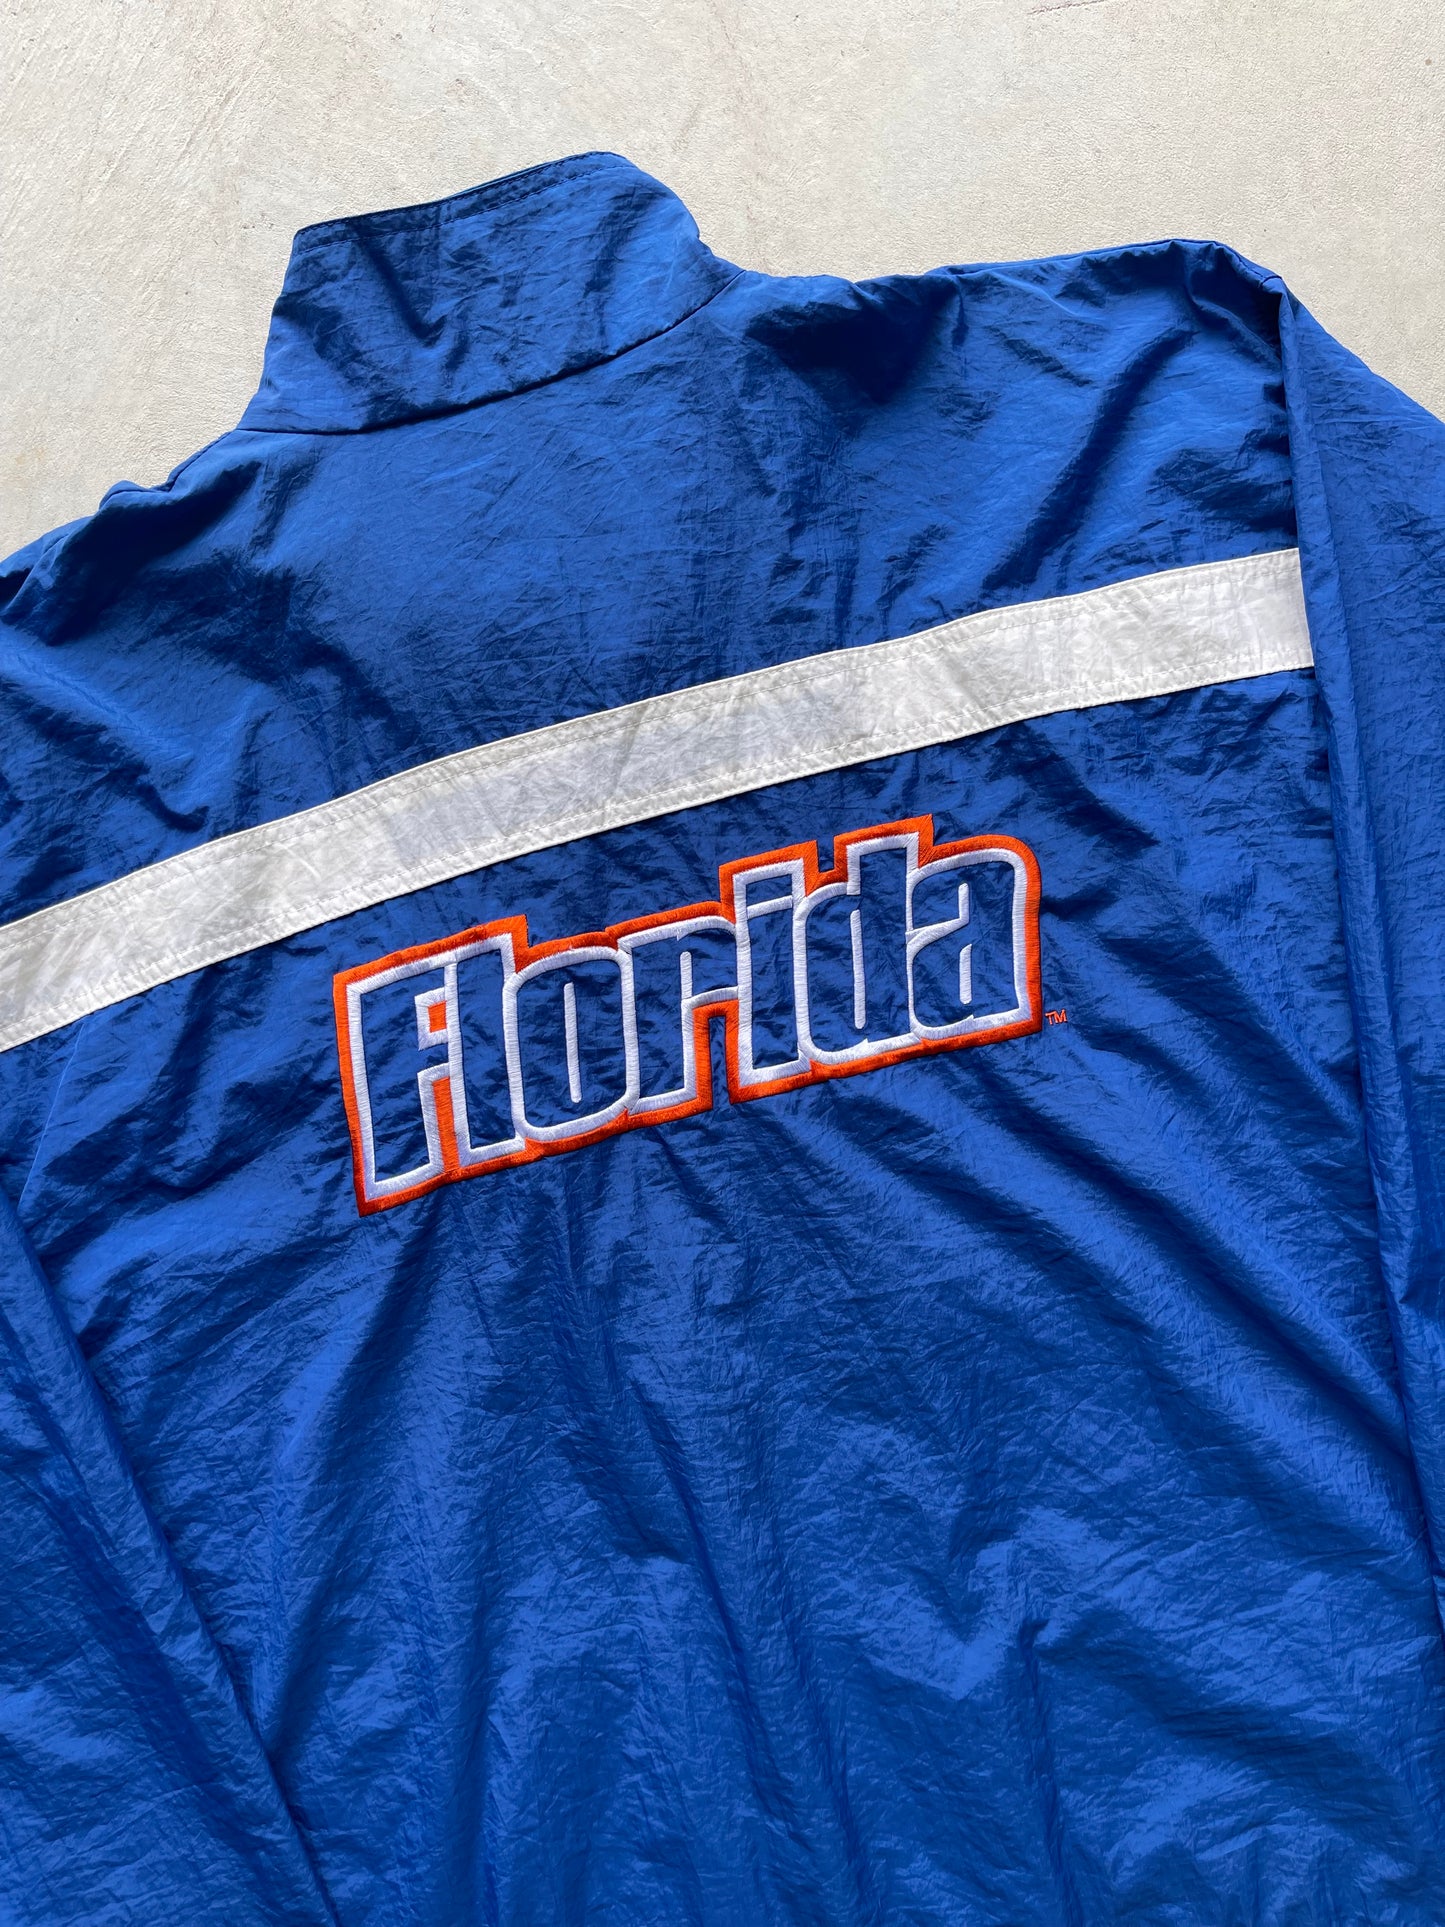 Vintage Reebok Florida Gators Spray Jacket (XL)